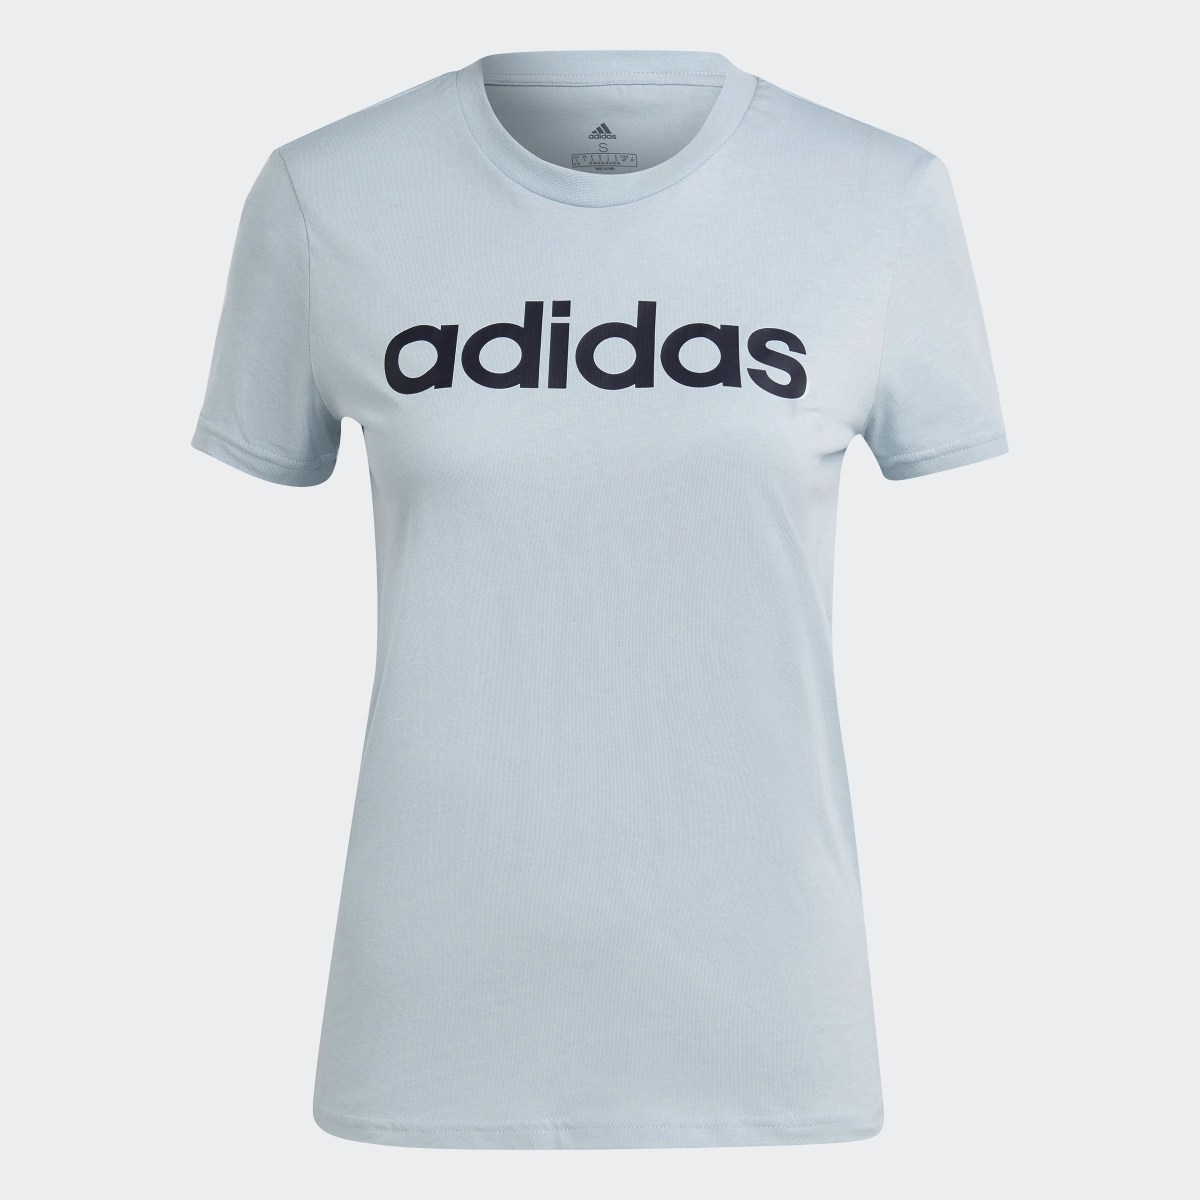 Adidas LOUNGEWEAR Essentials Slim Logo T-Shirt. 5